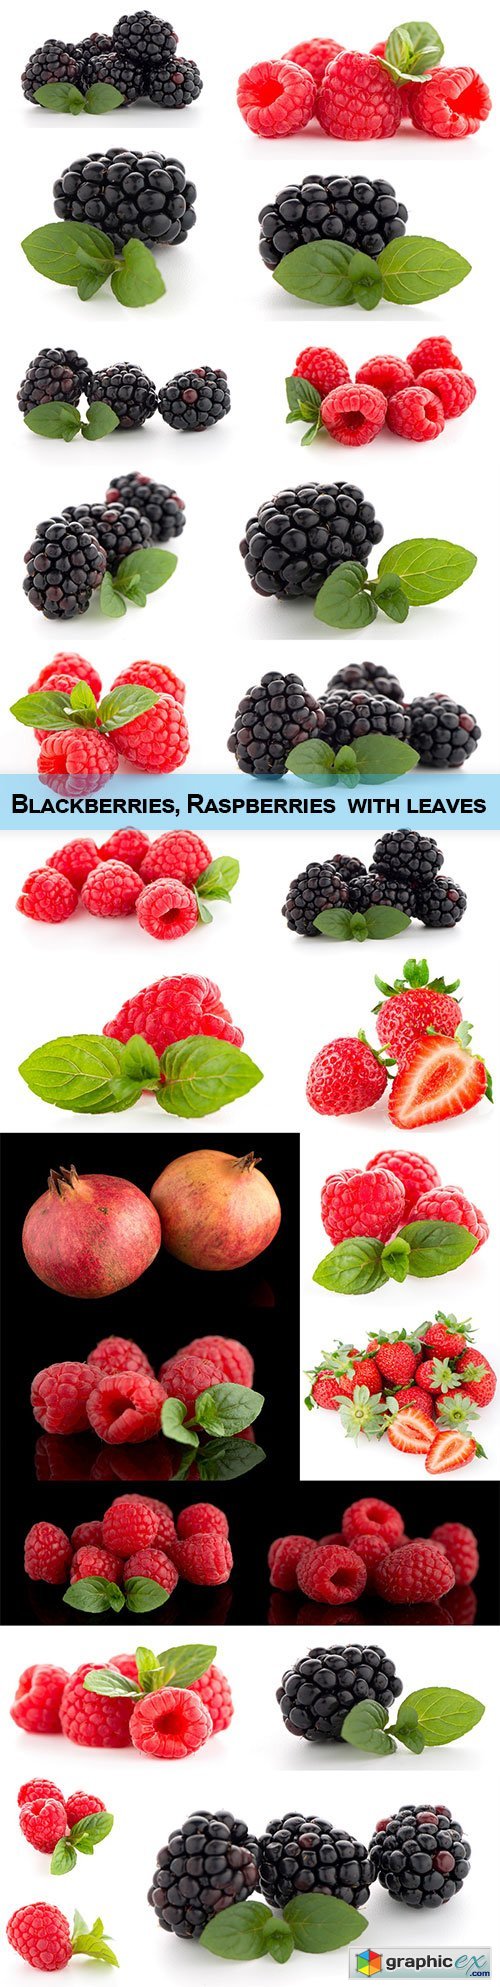 Blackberries, Raspberries with leaves